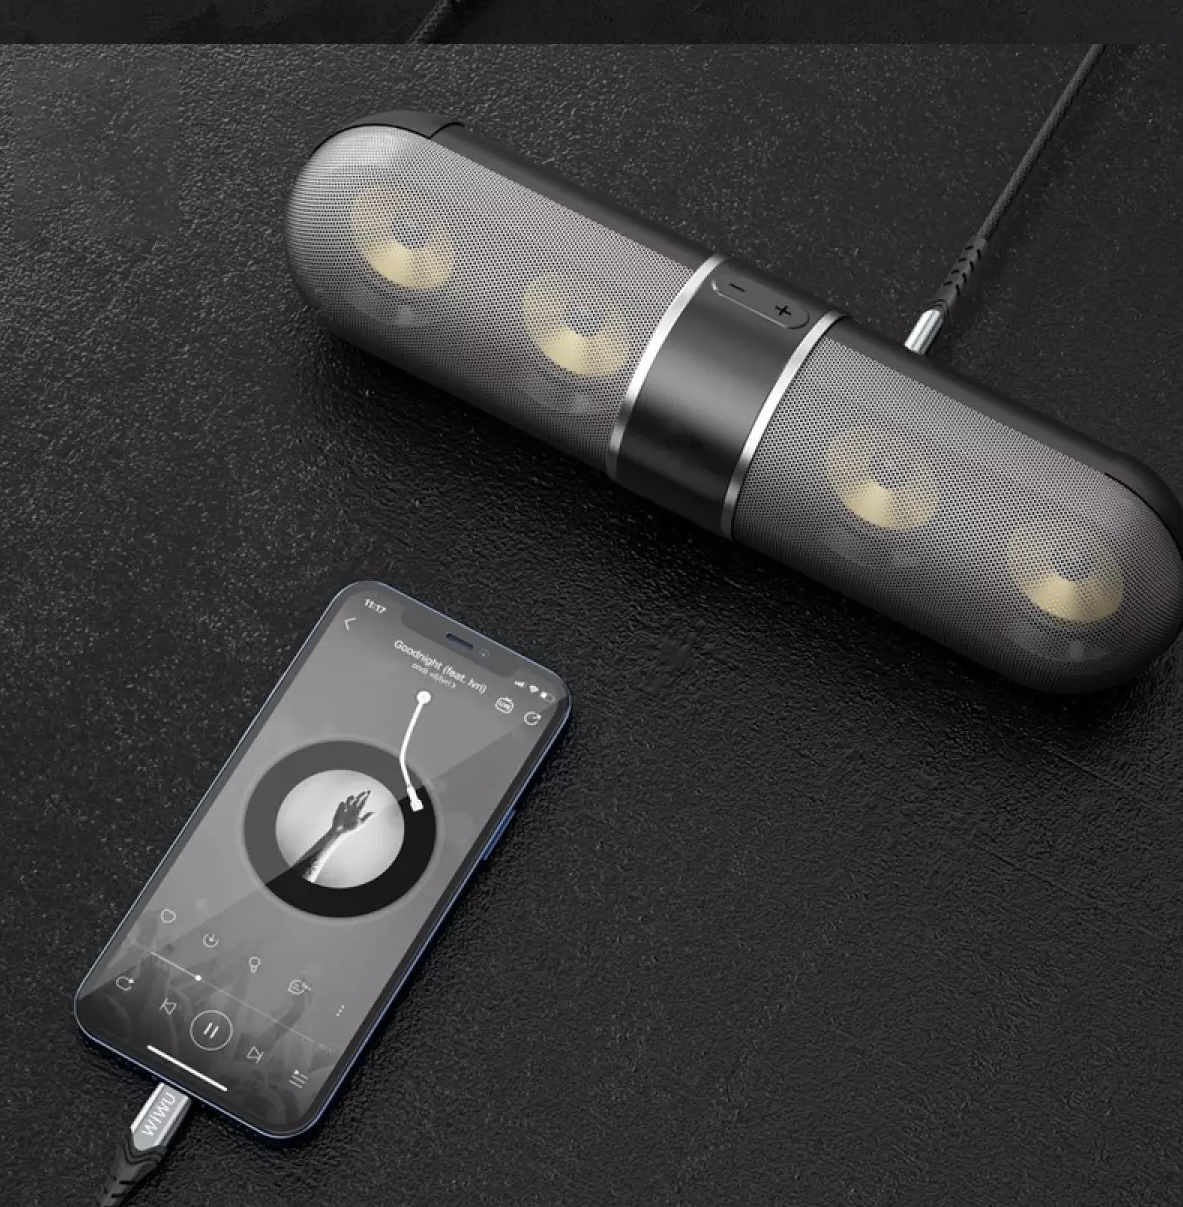 Jack Chuyển Wiwu AUX Stereo Cable 3.5mm To USB- C YP03 Chất Liệu Hợp Kim Nhôm Chất Lượng Cao, Bền Bỉ - Hàng Chính Hãng